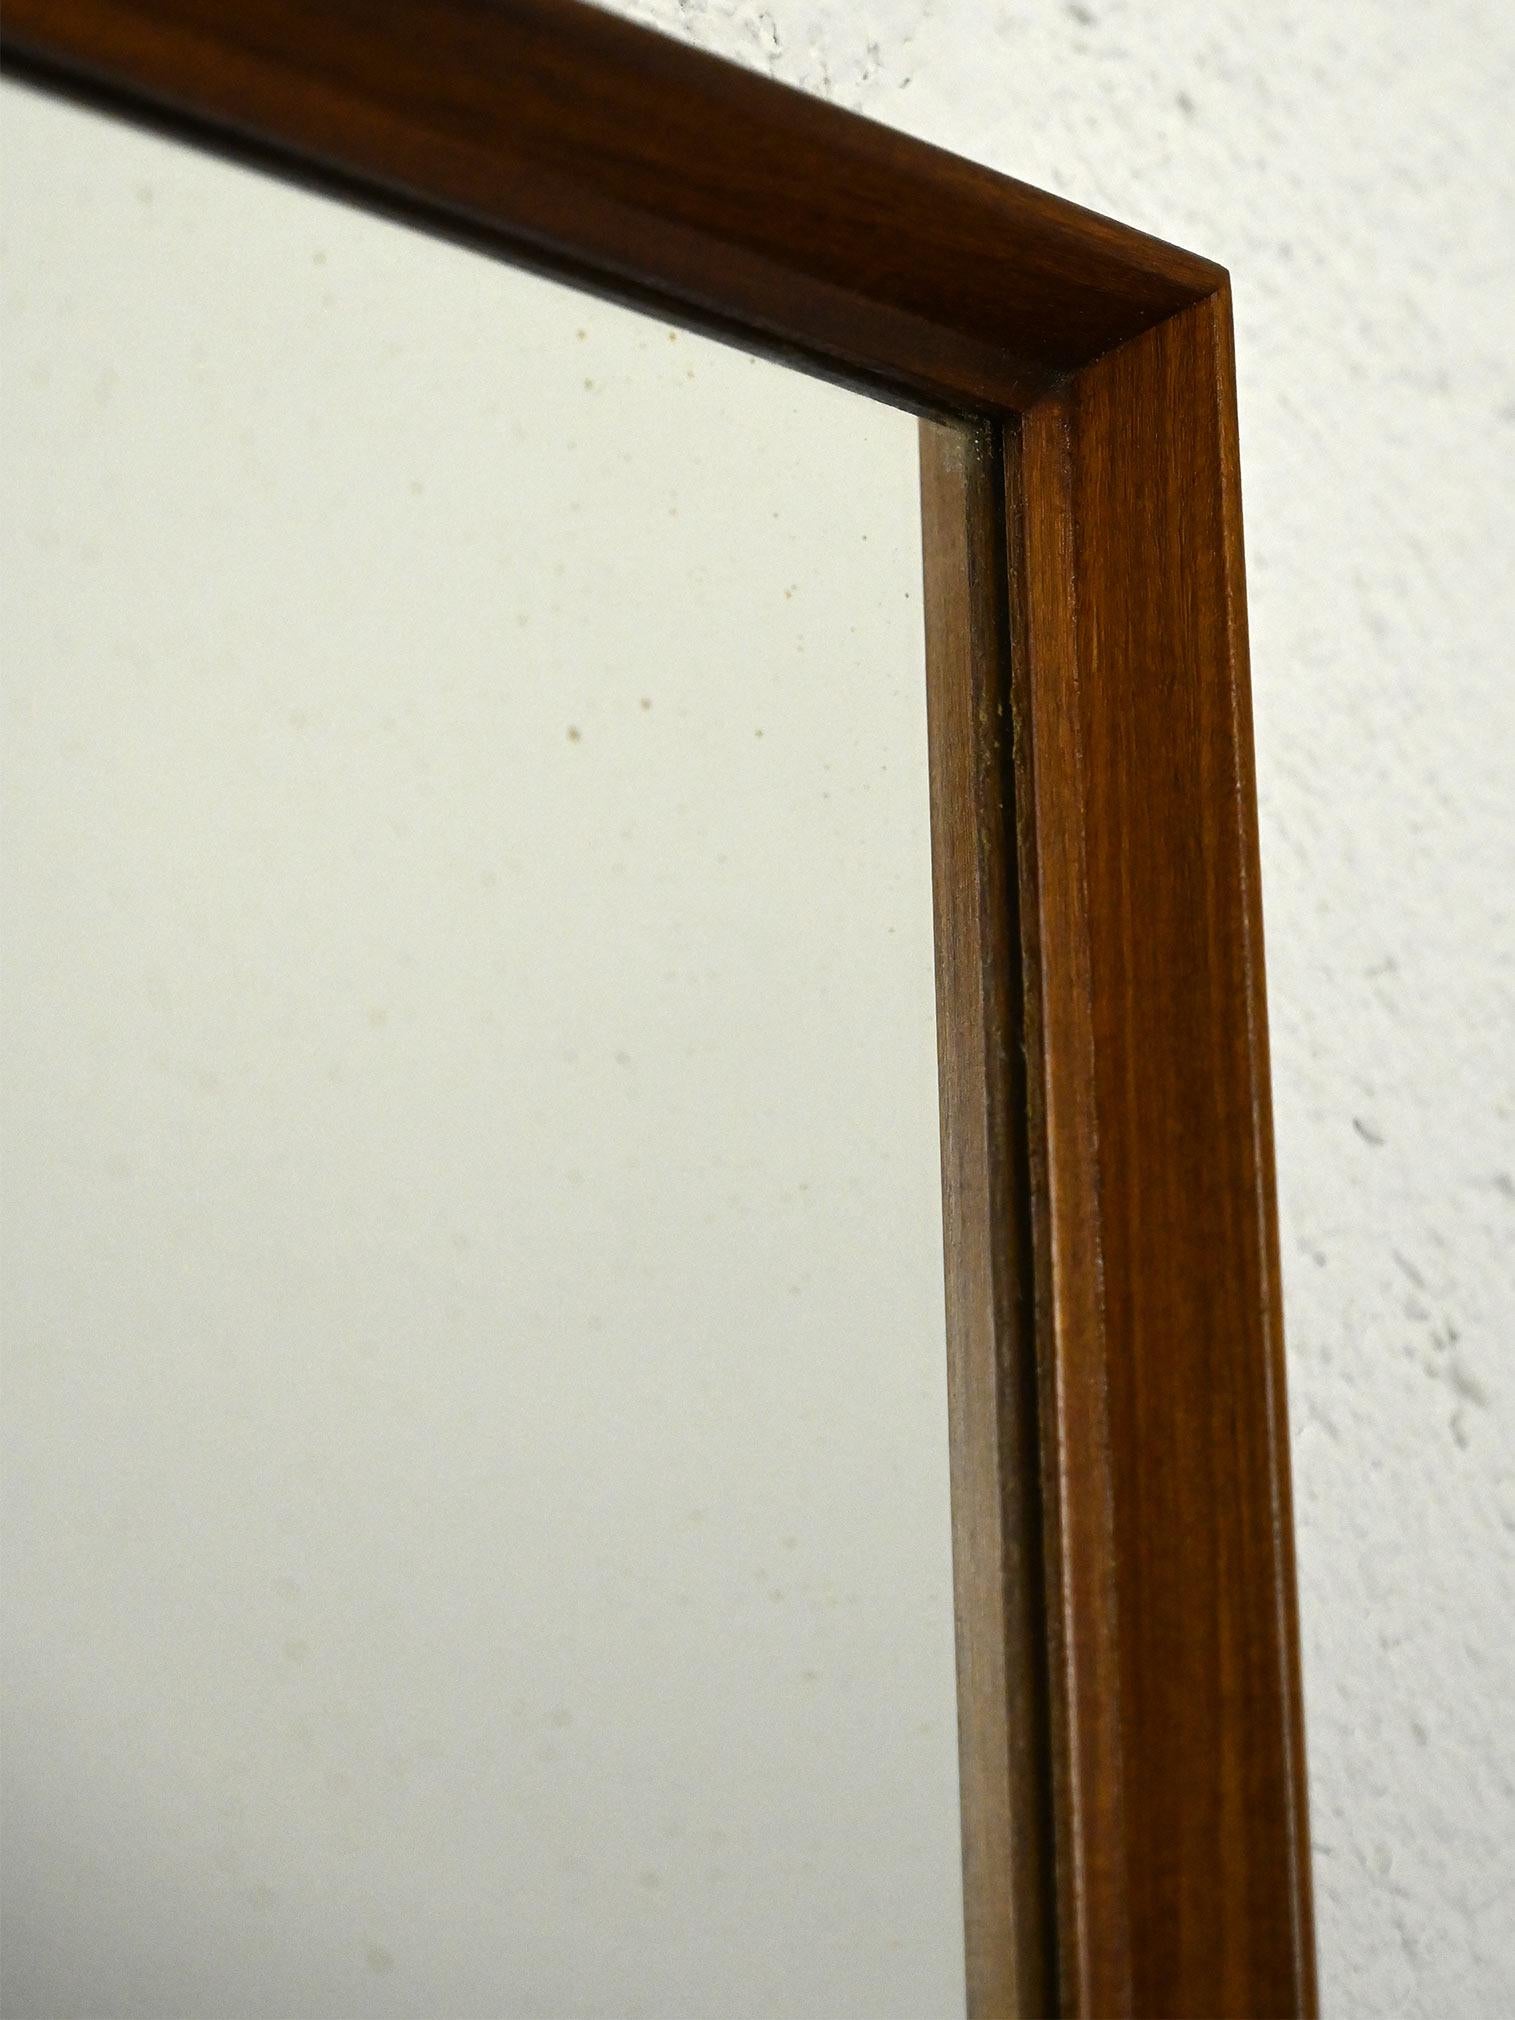 Miroir scandinave en bois de teck.

Doté d'un design understated et moderne, ce miroir en bois de teck présente des lignes épurées et minimalistes. Sa forme carrée et rectangulaire en fait un miroir mural idéal pour embellir l'entrée ou la chambre à